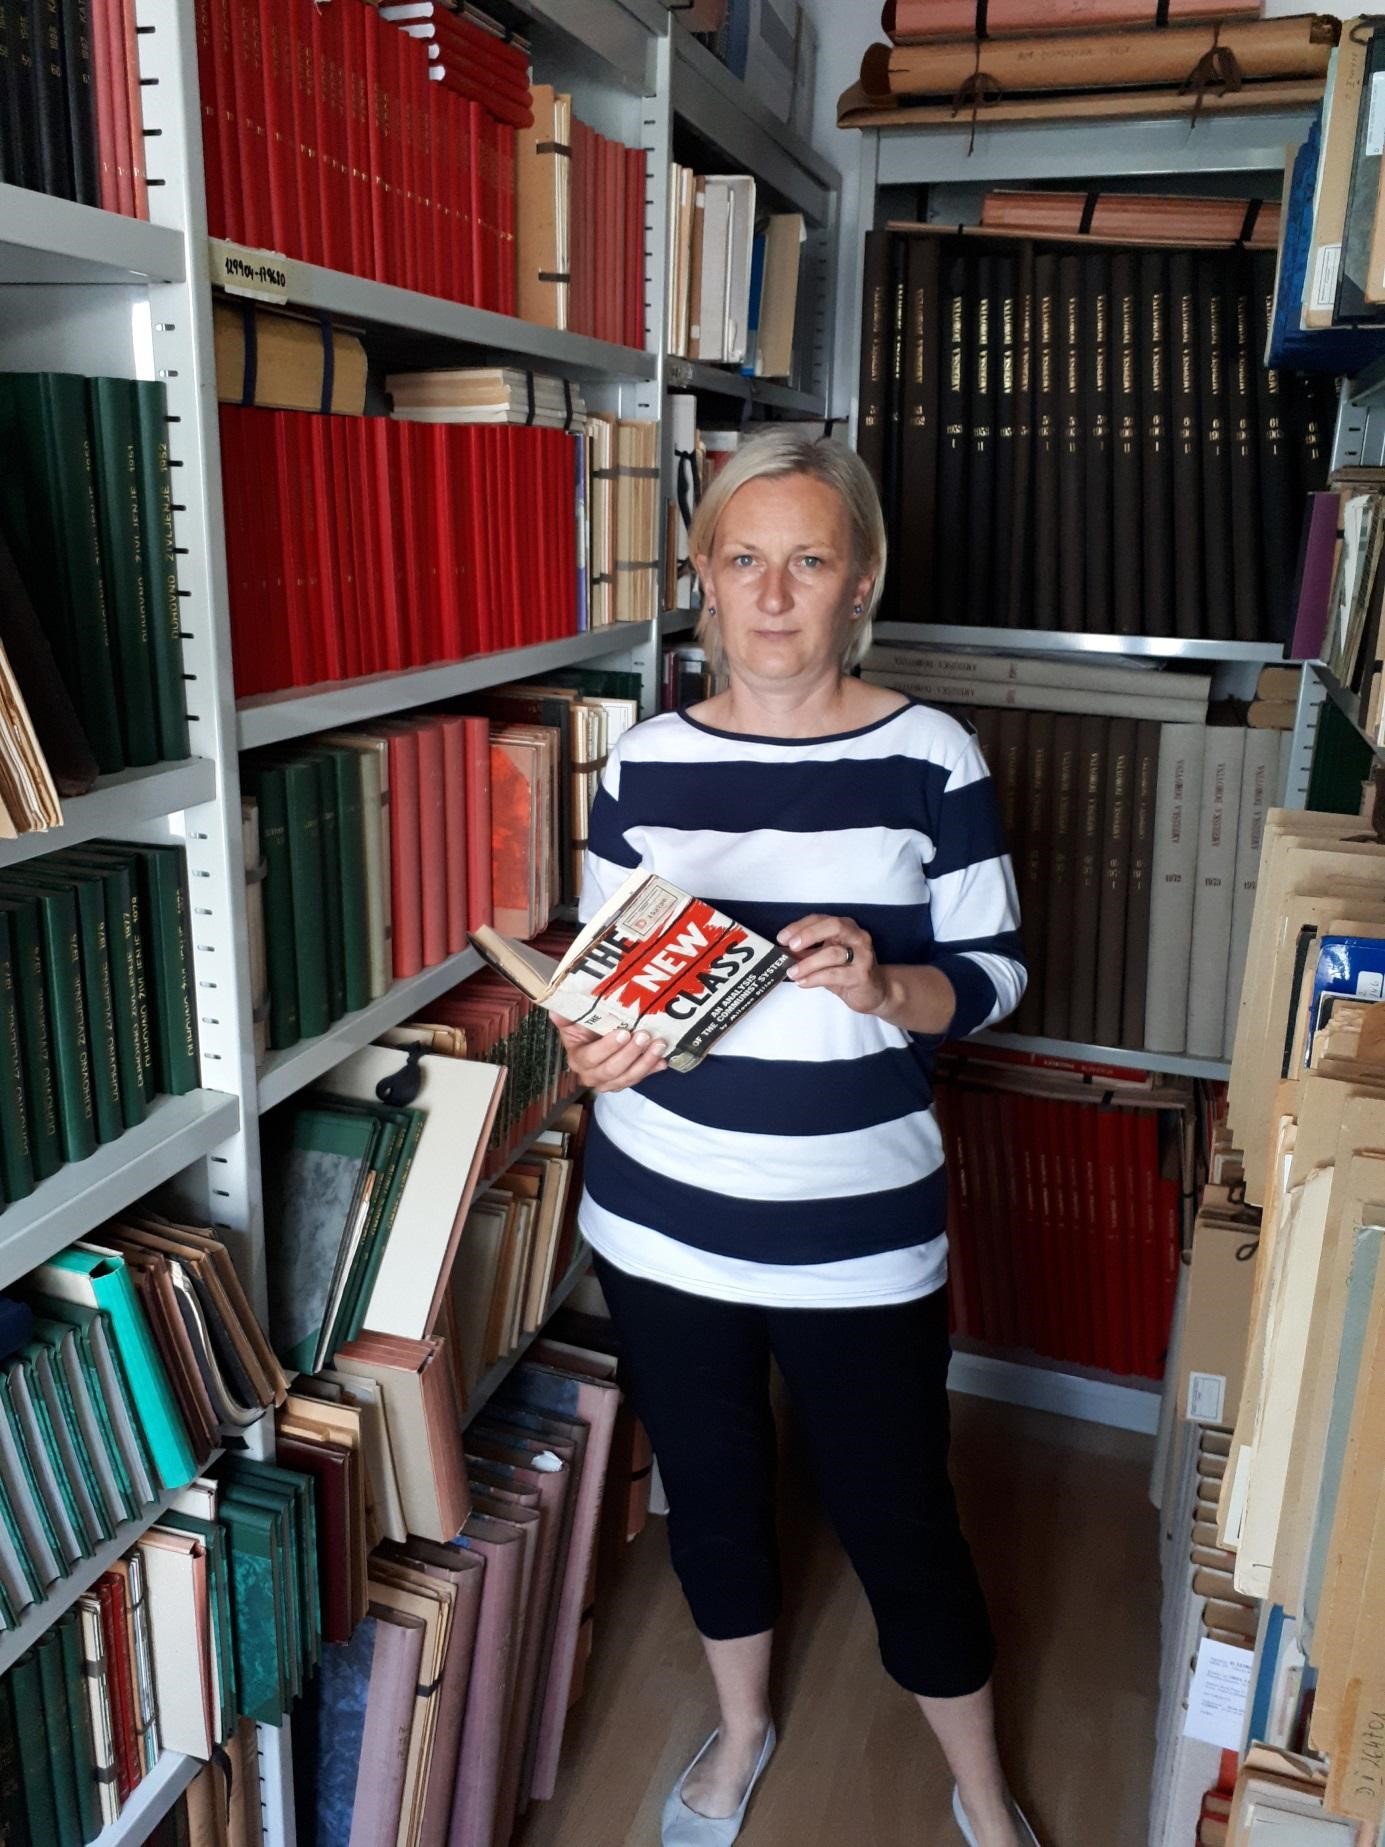 Helena Janežič i D-fond, u pozadini, koji se nalazi u sklopu Zbirke slovenskog tiska izvan Republike Slovenije u Nacionalnoj i sveučilišnoj knjižnici u Ljubljani. (2018-05-24)